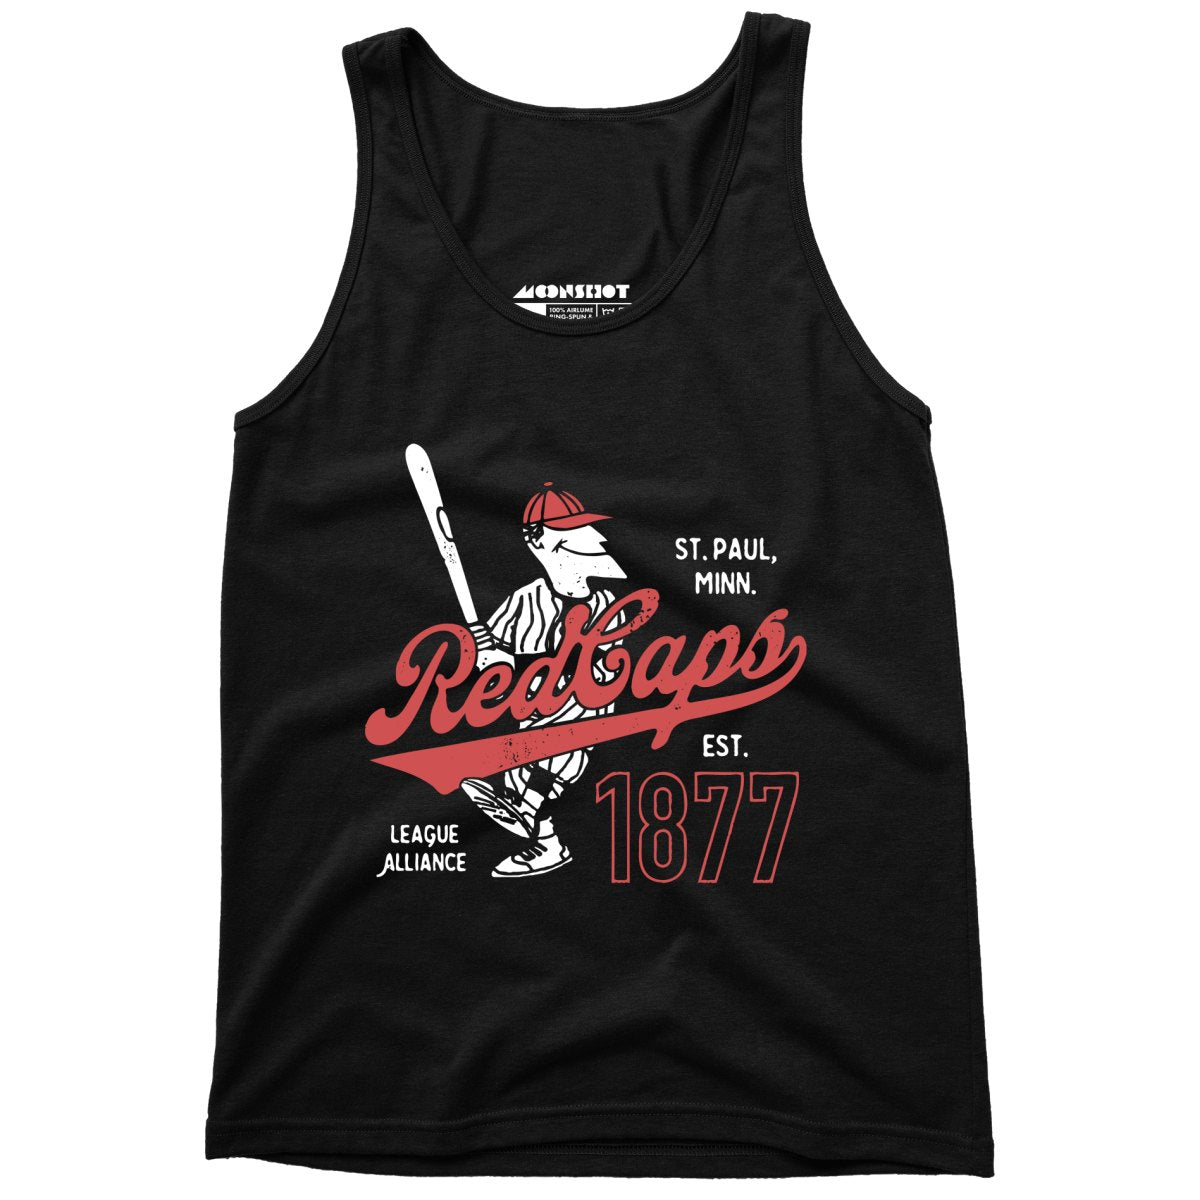 Saint Paul Red Caps - Minnesota - Vintage Defunct Baseball Teams - Unisex Tank Top